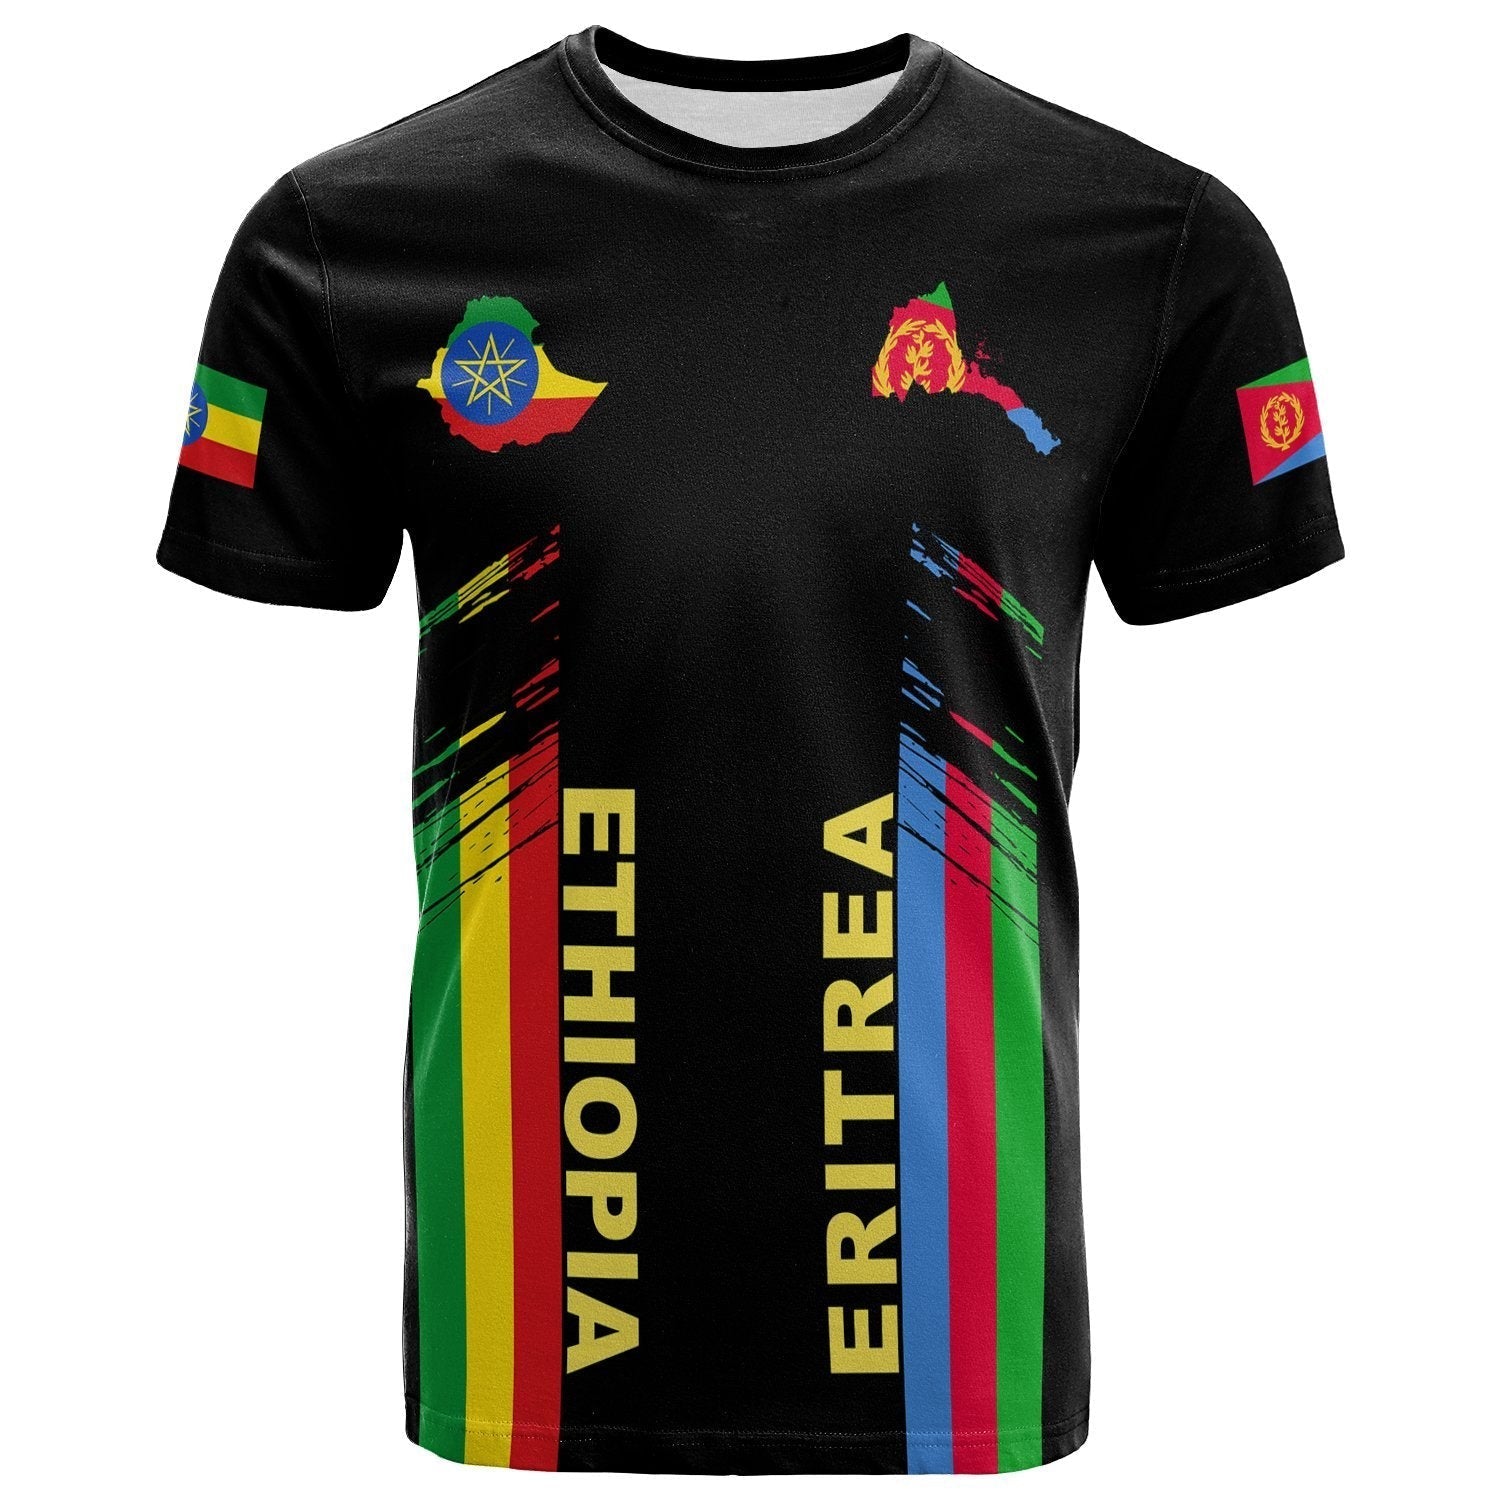 ethiopia-and-eritrea-t-shirt-peace